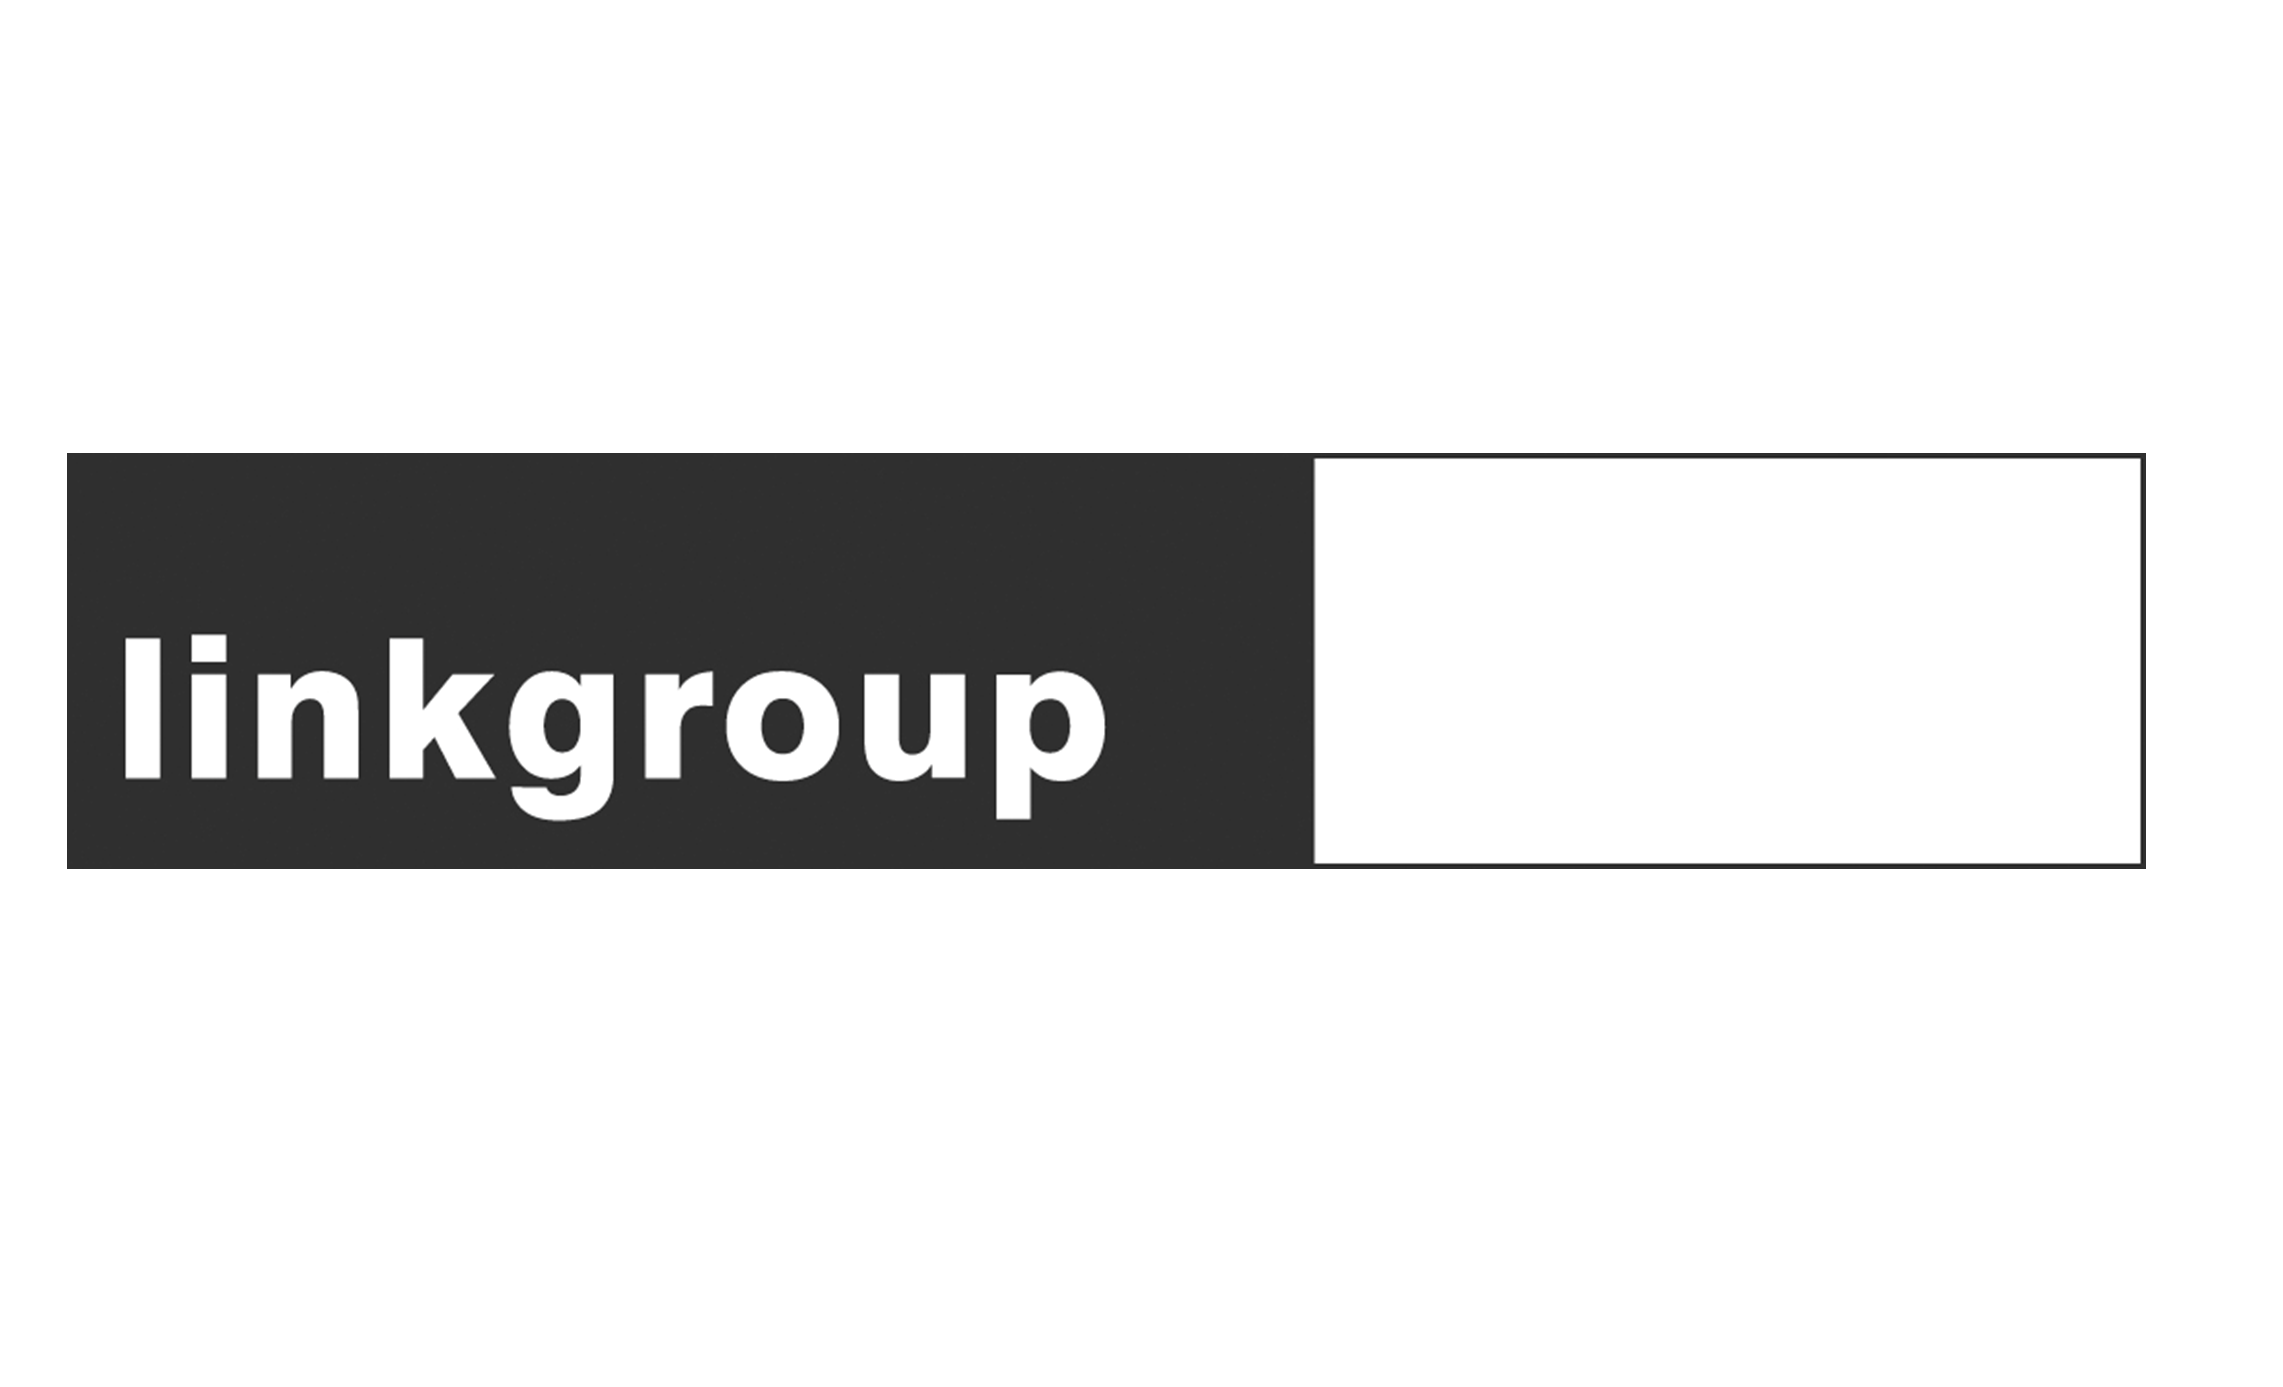  Linkgroup ist eine inhabergeführte Schweizer Agentur für Publishing mit Sitz in Zürich. Als One-Stop-Shop unterstützt sie ihre Kund*innen mit exklusiven Leistungspaketen für die Unternehmens- und Finanzkommunikation. Die Leistungspakete decken sowoh